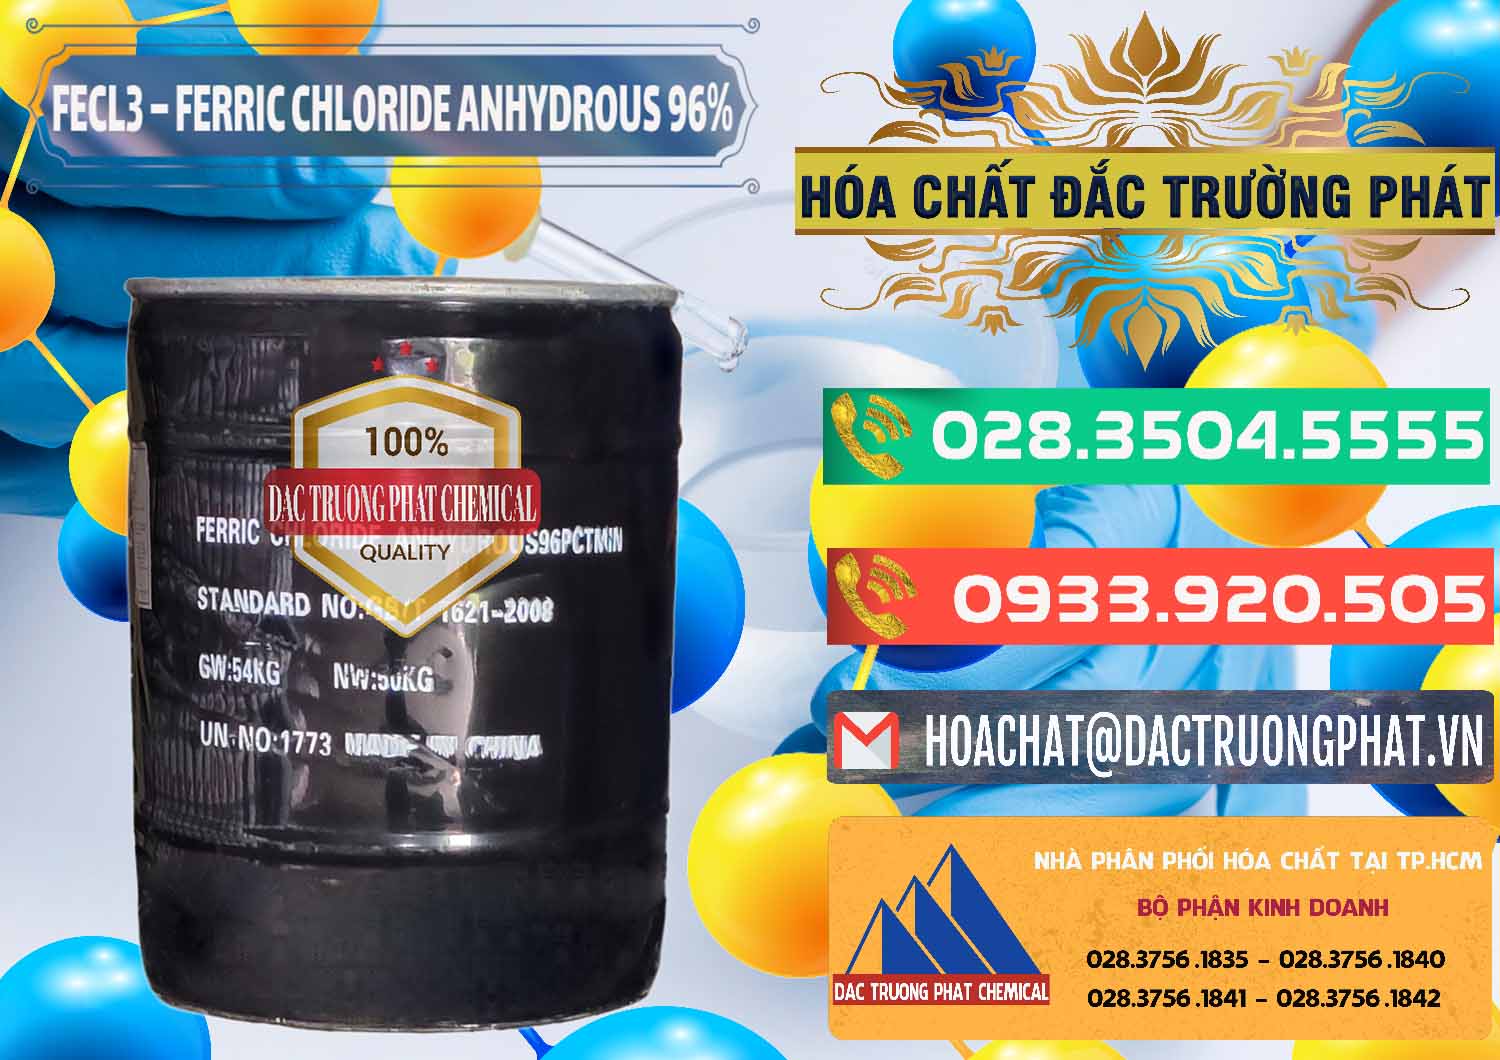 Cty kinh doanh _ bán FECL3 – Ferric Chloride Anhydrous 96% Trung Quốc China - 0065 - Chuyên bán & cung cấp hóa chất tại TP.HCM - congtyhoachat.com.vn